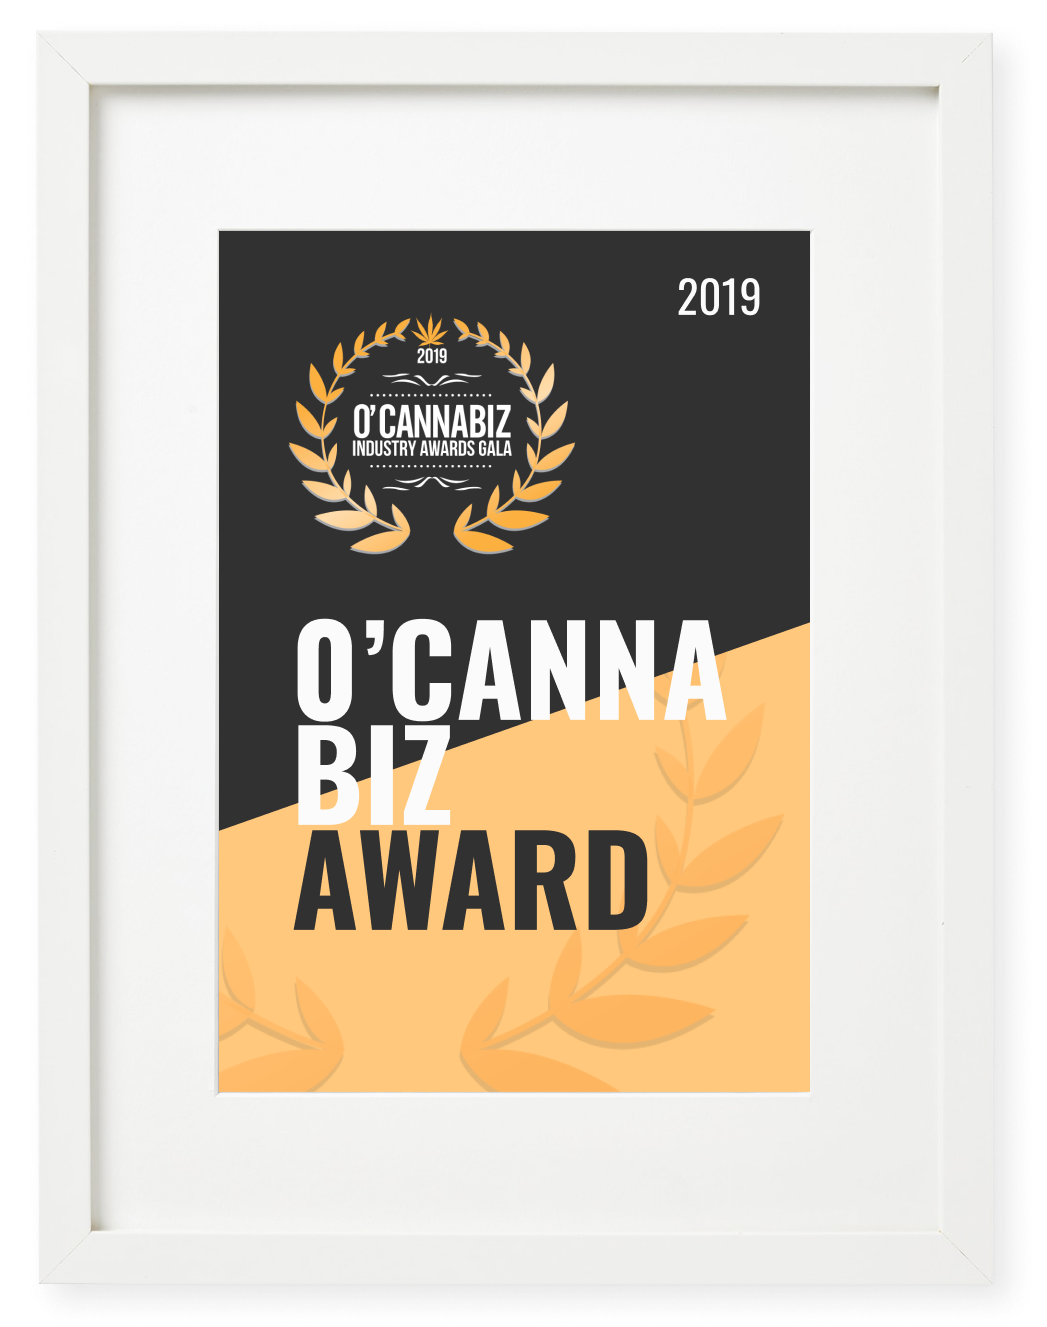 O'Cannabiz Award